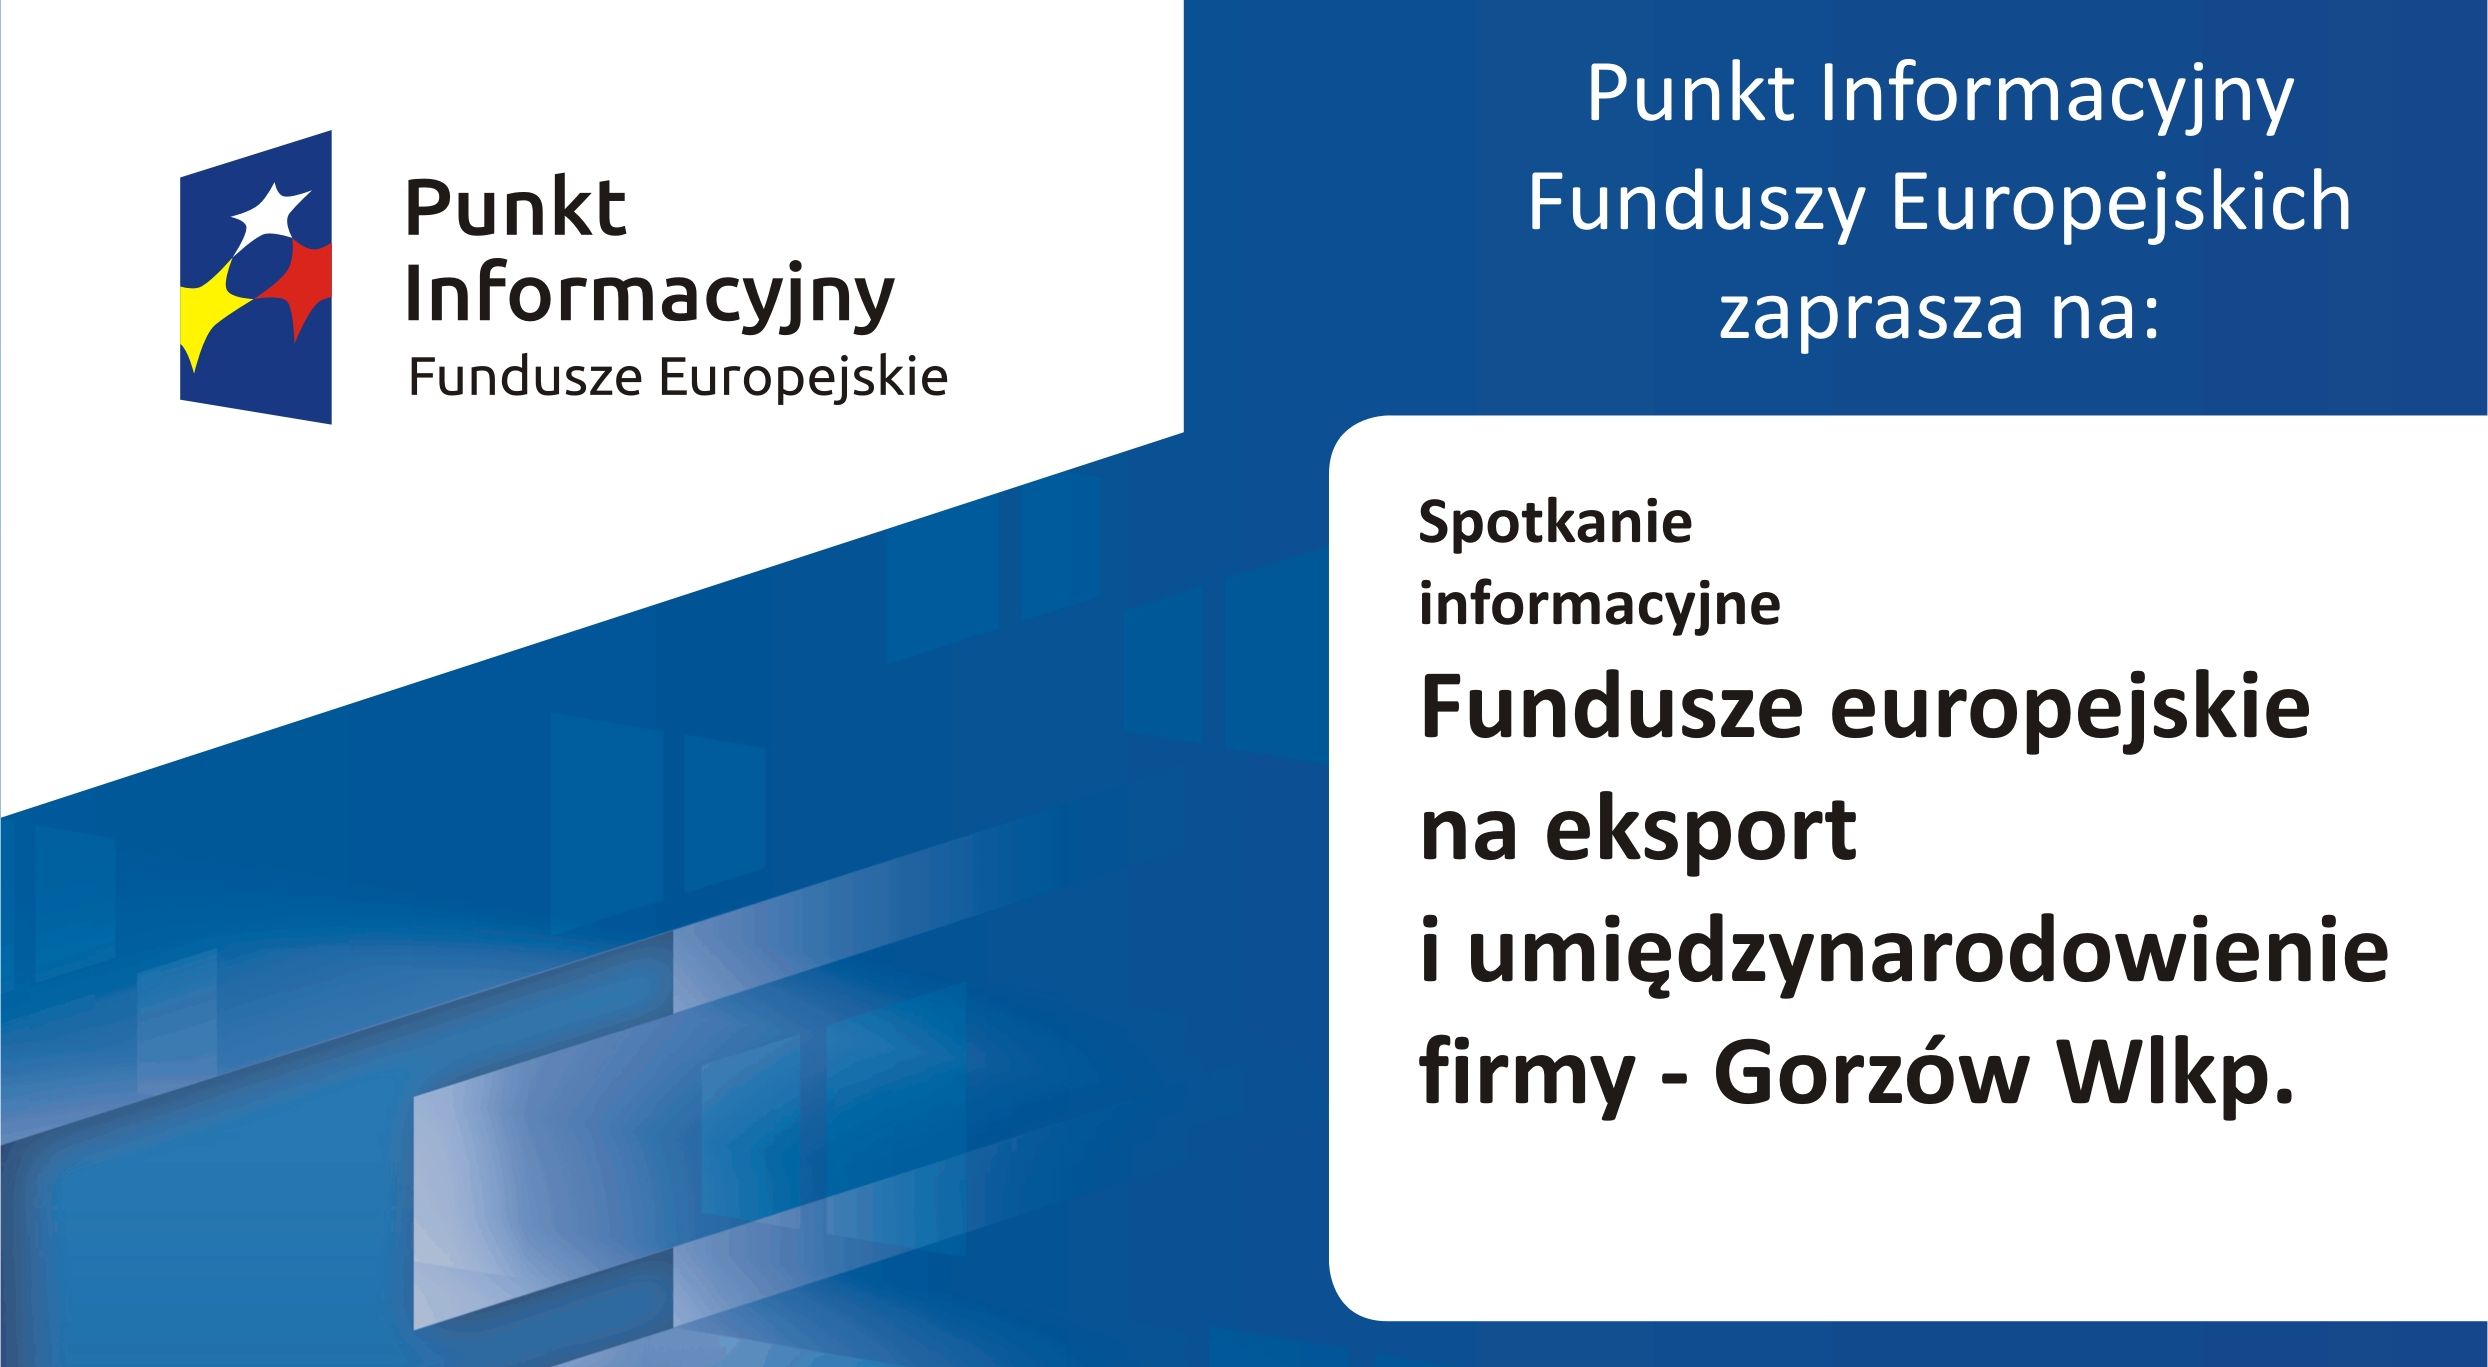 Ilustracja do informacji: Fundusze europejskie na eksport i umiędzynarodowienie firmy - Gorzów Wlkp. 12.02.2020 r. 